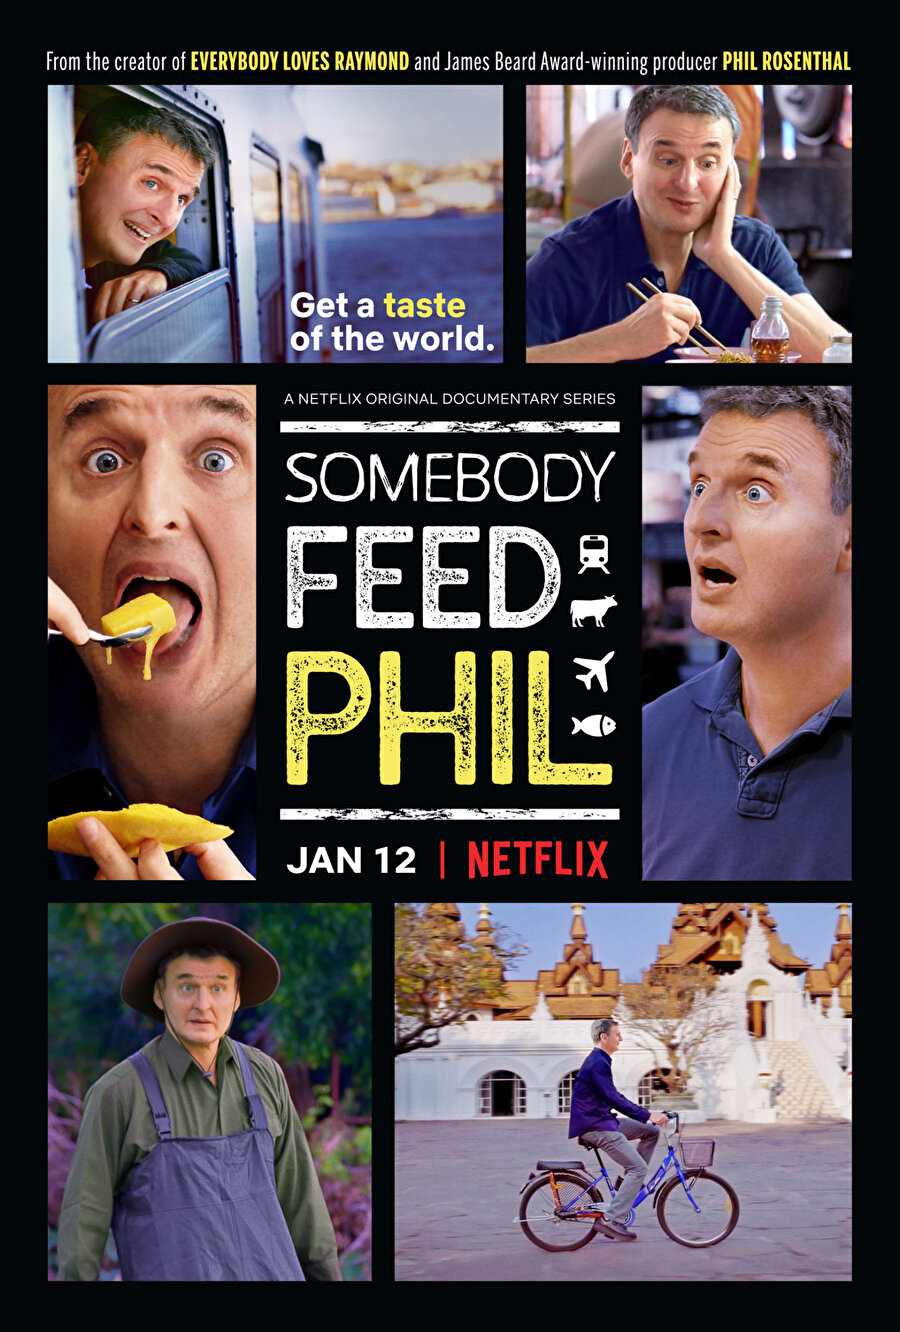 1. Somebody Feed Phil

                                    
                                    
                                    
                                    
                                    Phil Rosenthal dünyayı gezen, gezerken de dünya ülkelerinin yerel tatlarını deneyen bir kaşif. Onu bir gün Bangkok'ta bir gün Tel Aviv'de görebilirsiniz. Yerel mutfakların yemeklerini midesine indirerek keşfeden Phil, heyecanı ve iştahı ile bizleri de acıktırıyor. 
                                
                                
                                
                                
                                